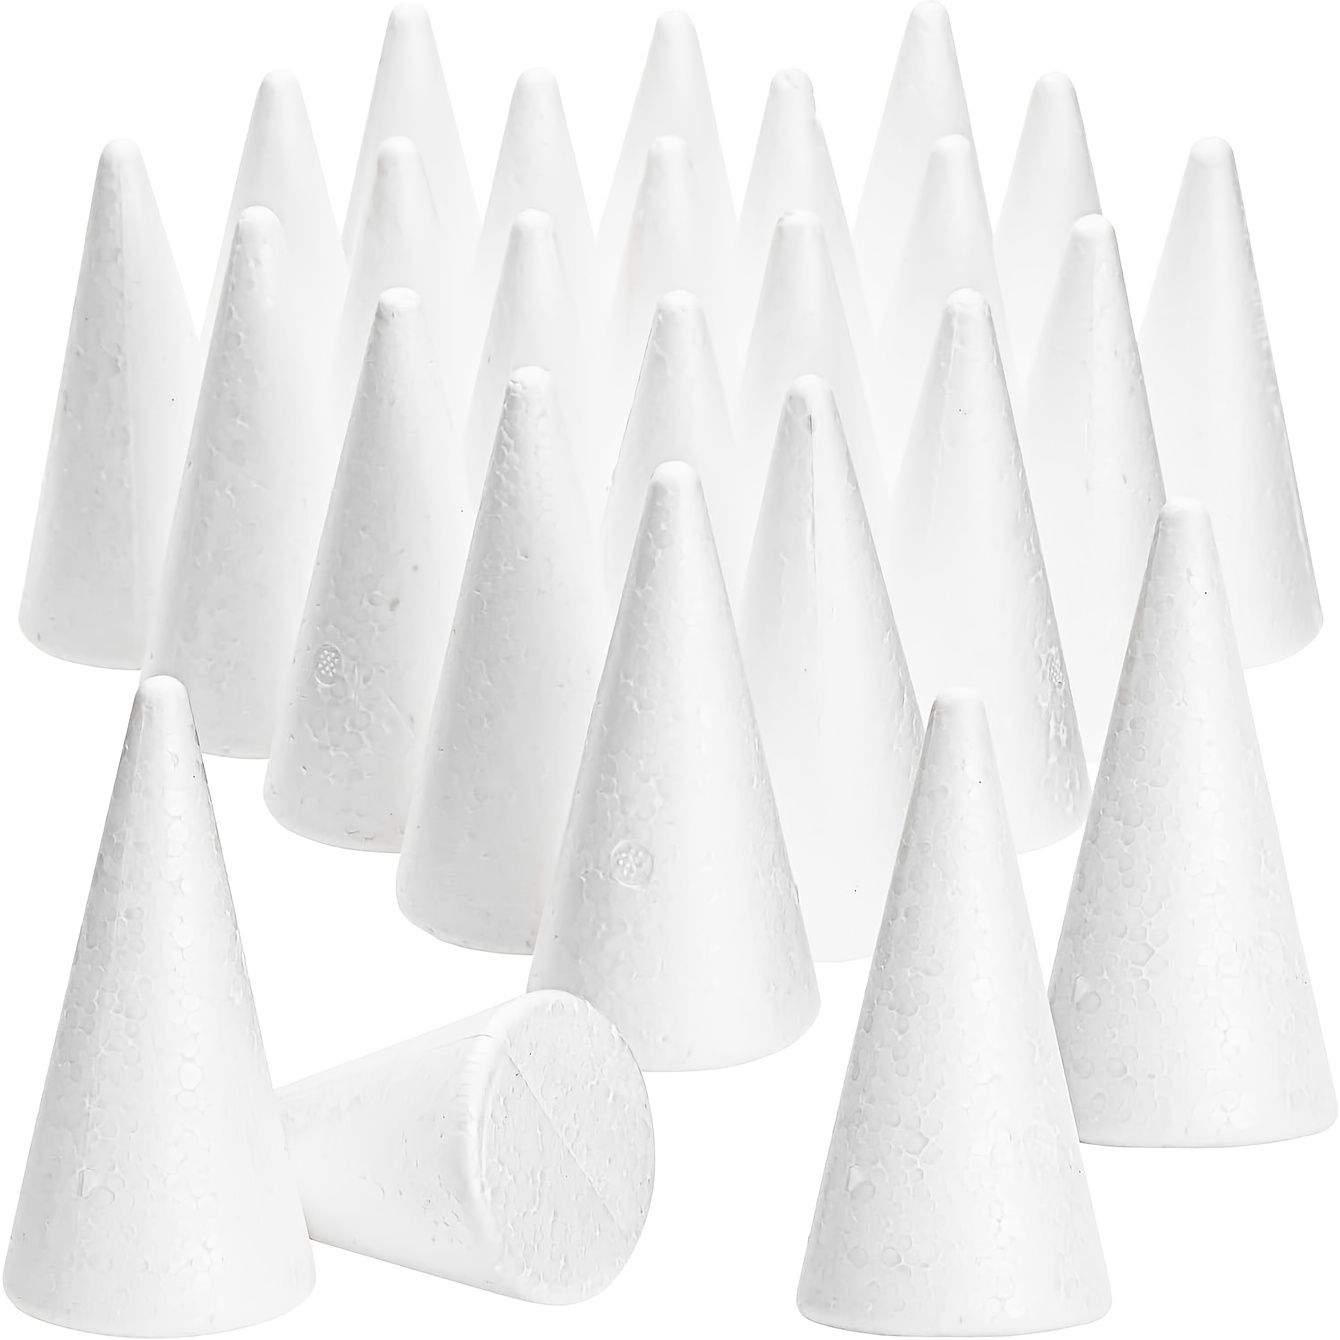 Polystyrene / Styrofoam Cones